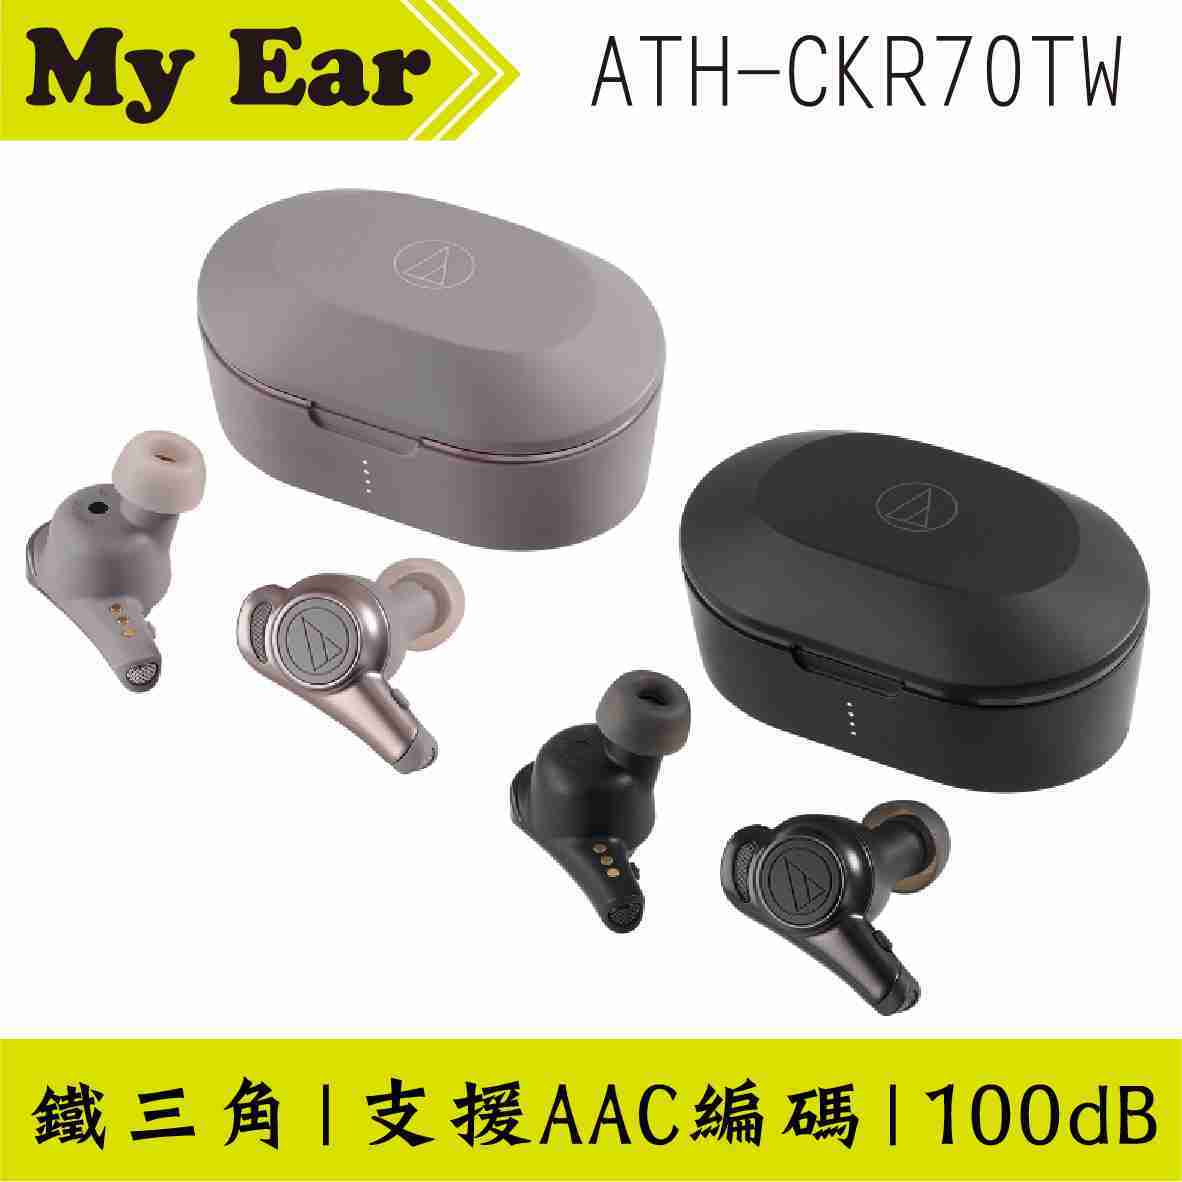 鐵三角 ATH-CKR70TW 黑色 可單耳使用 真無線 藍芽 耳機 | My Ear 耳機專門店